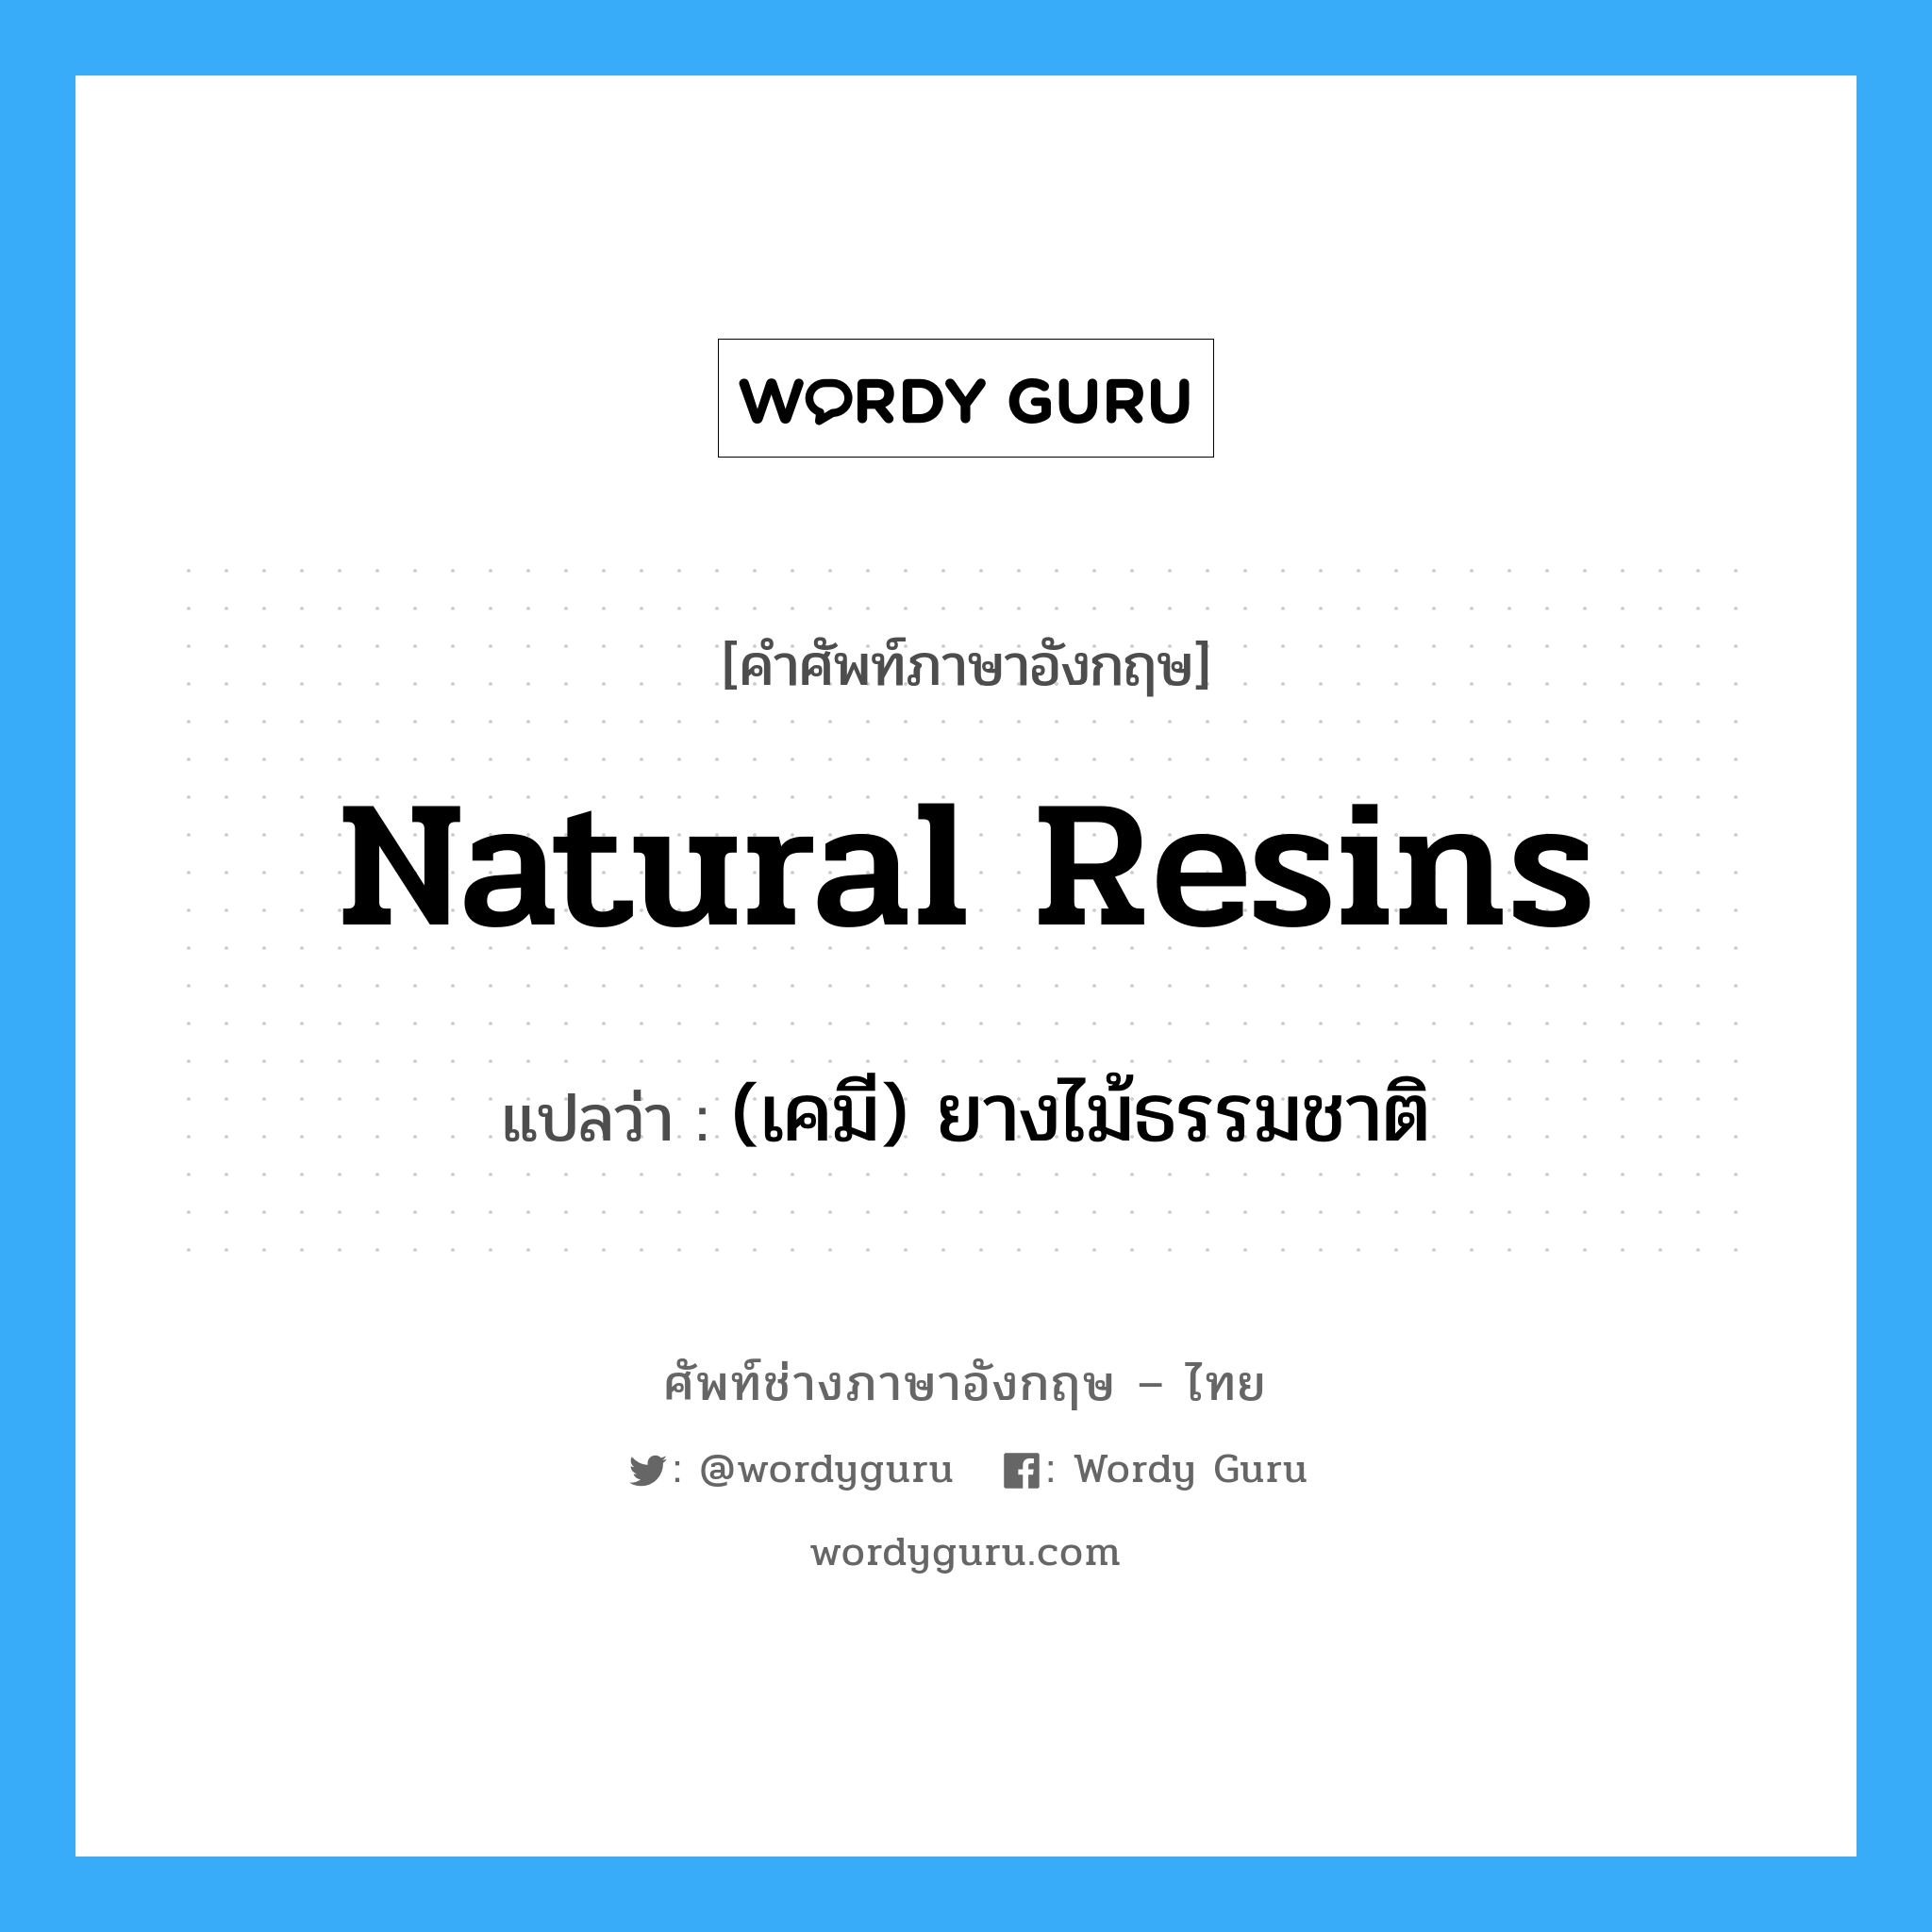 (เคมี) ยางไม้ธรรมชาติ ภาษาอังกฤษ?, คำศัพท์ช่างภาษาอังกฤษ - ไทย (เคมี) ยางไม้ธรรมชาติ คำศัพท์ภาษาอังกฤษ (เคมี) ยางไม้ธรรมชาติ แปลว่า natural resins